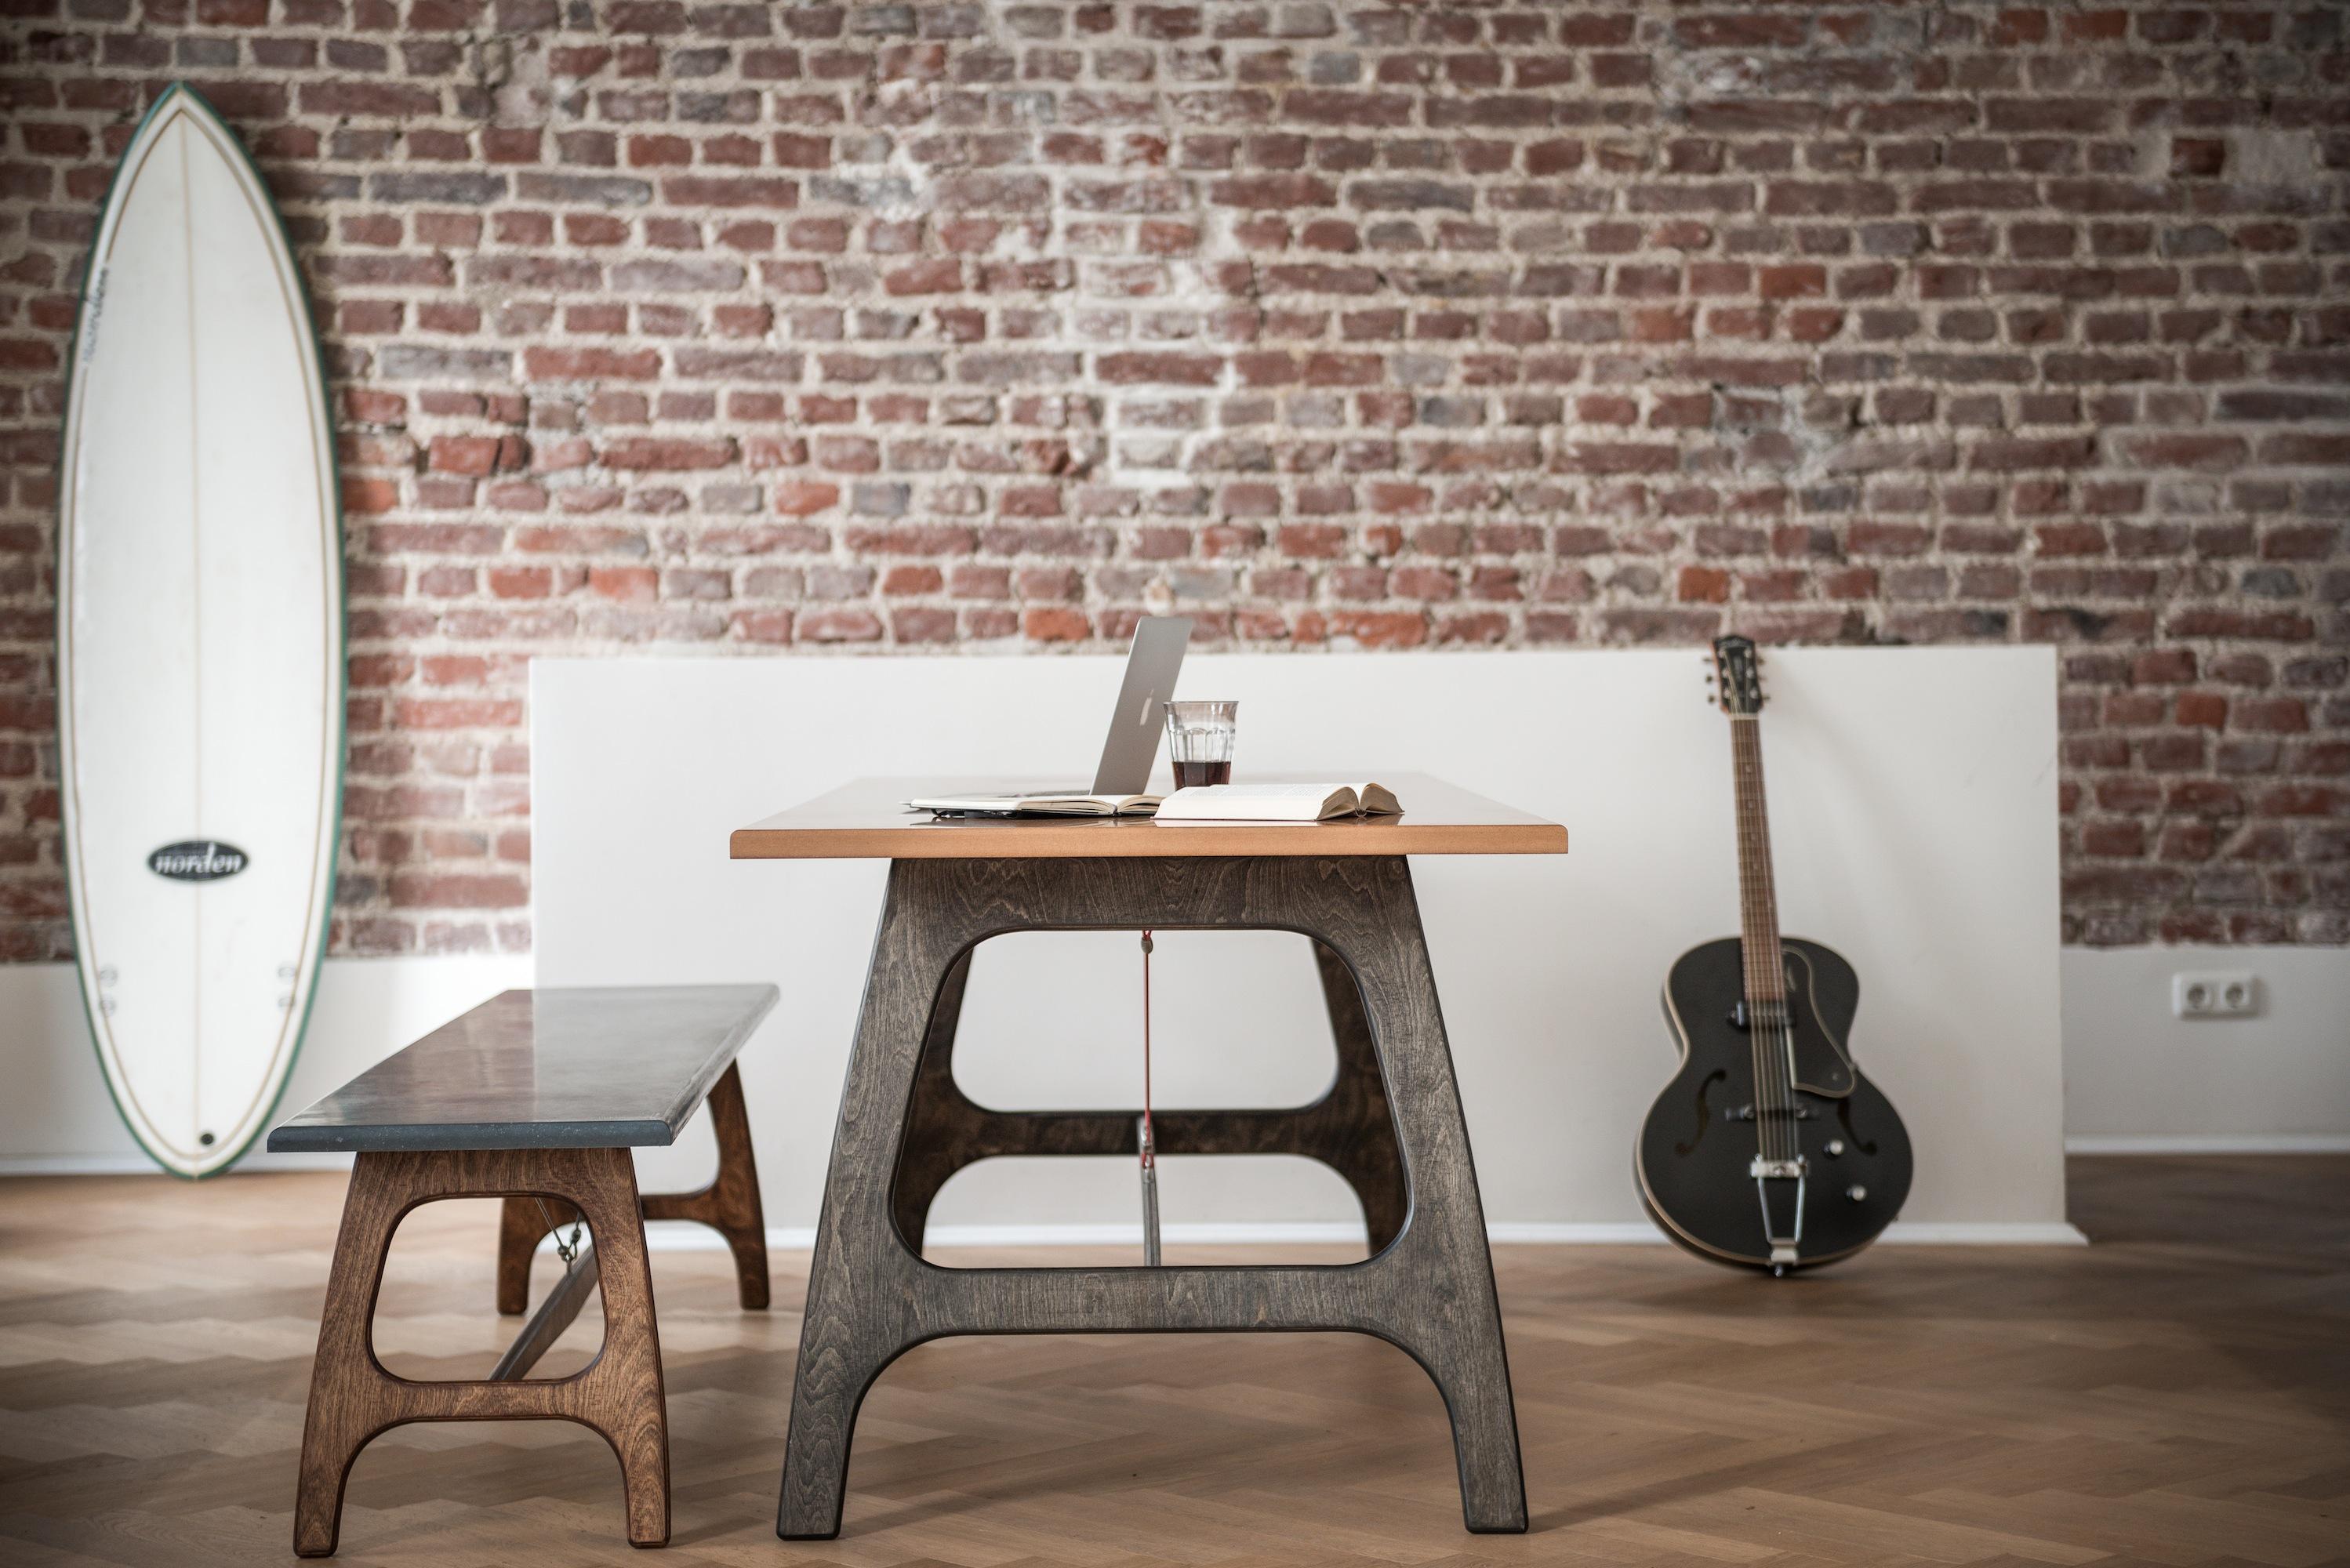 Pit Frame (Table) #esstisch #stecksystem #industrialdesigntisch ©Malte Jäger